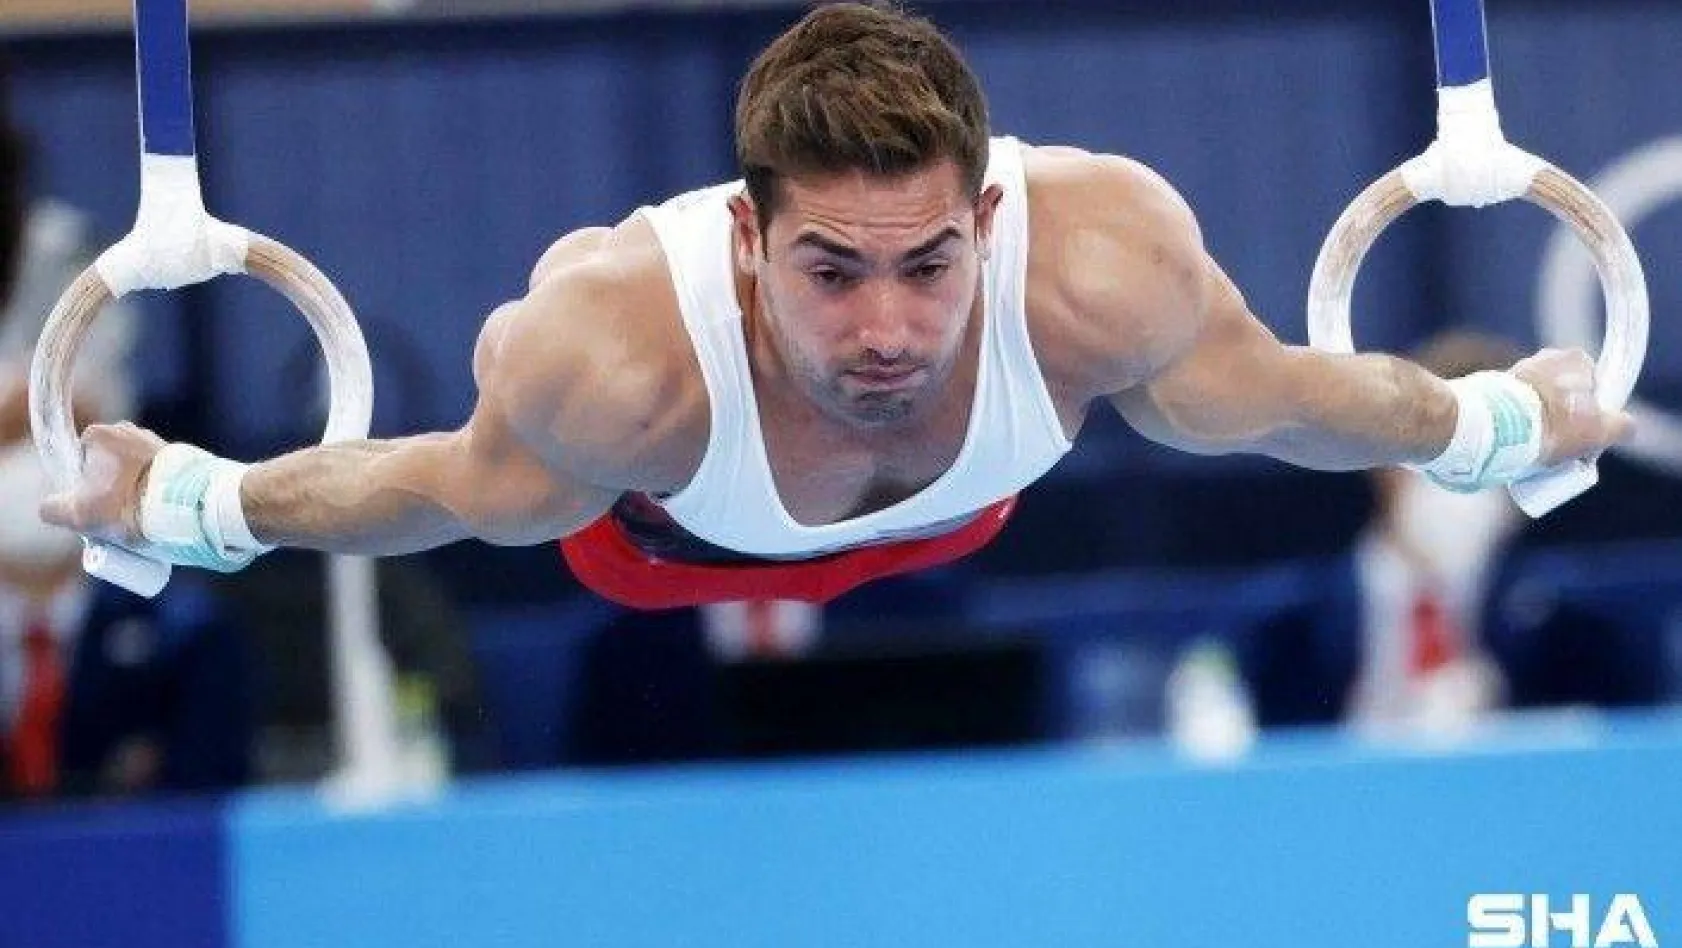 Tokyo Olimpiyat Oyunları Artistik Cimnastik halka aleti final mücadelesinde milli sporcular İbrahim Çolak beşinci, Adem Asil ise yedinci oldu.